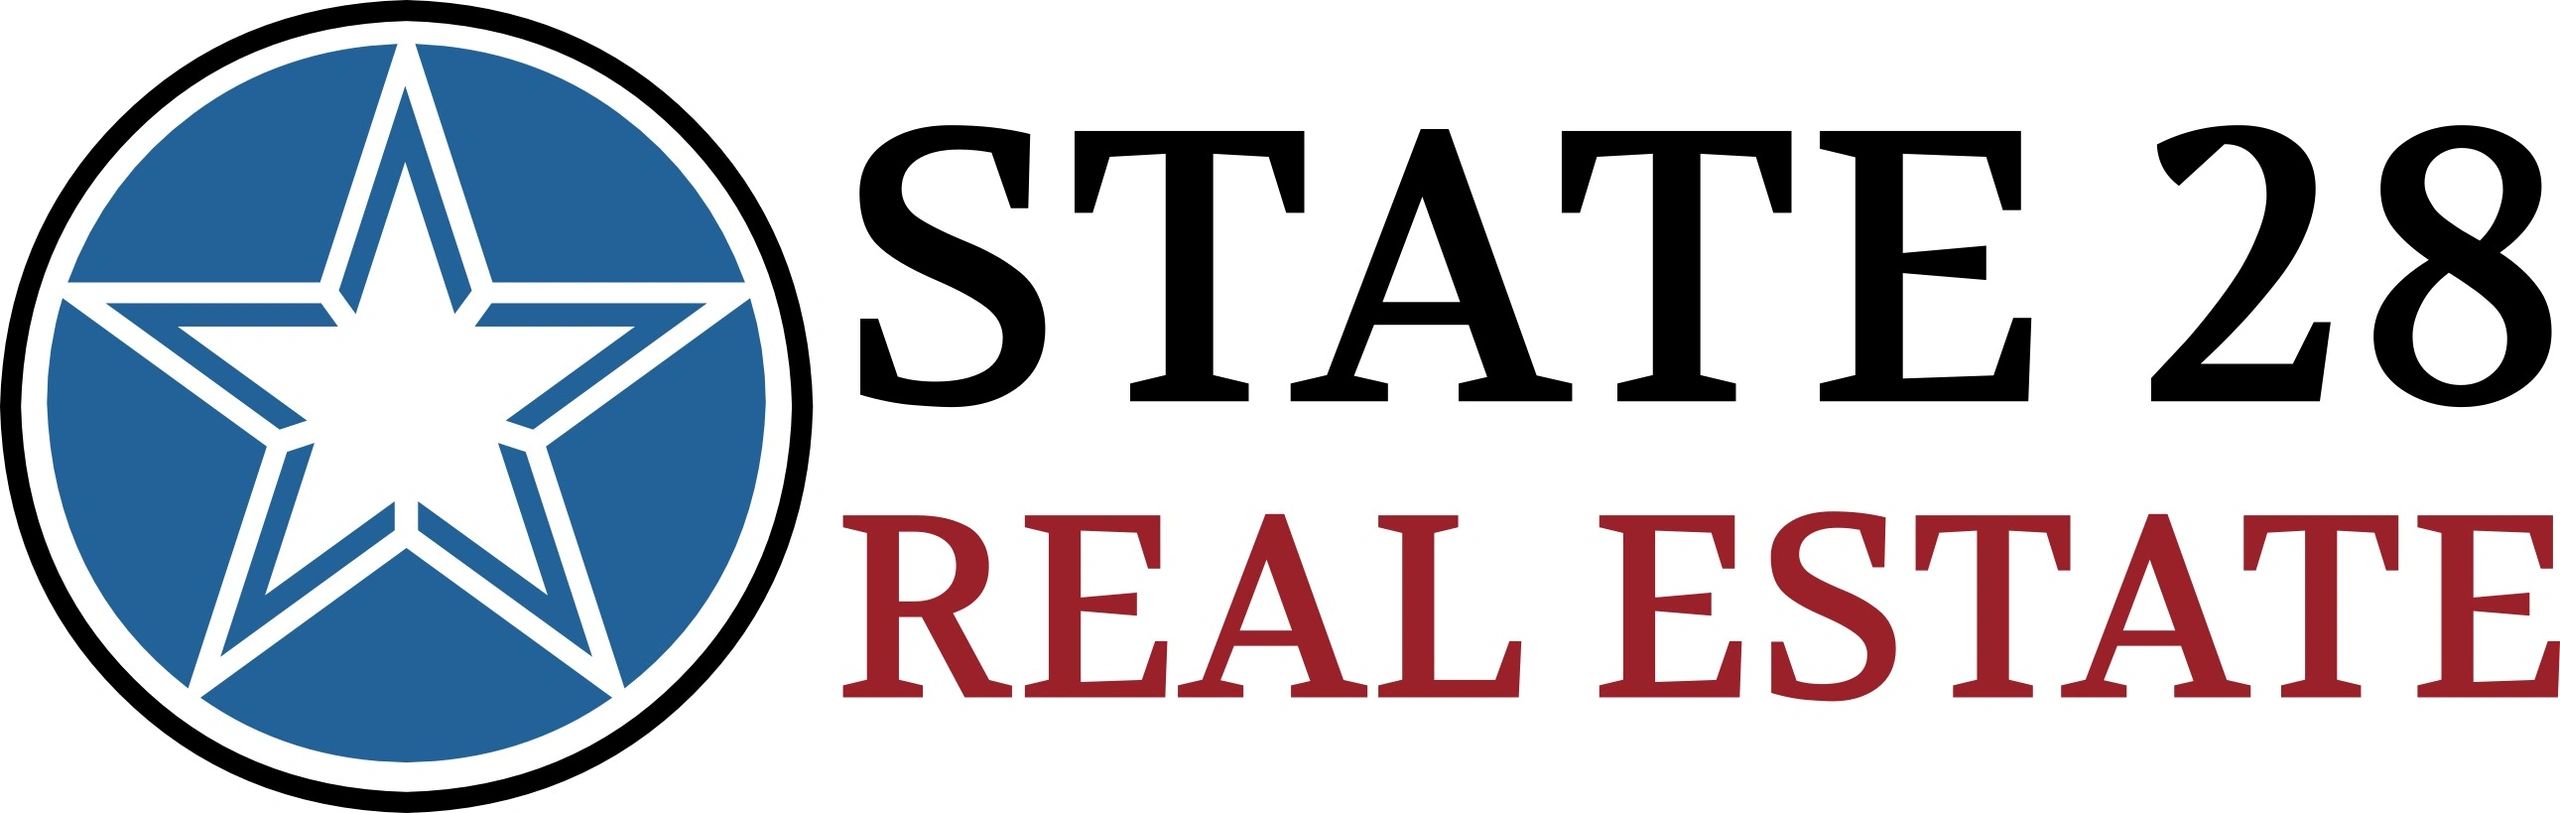 chms real estate logo